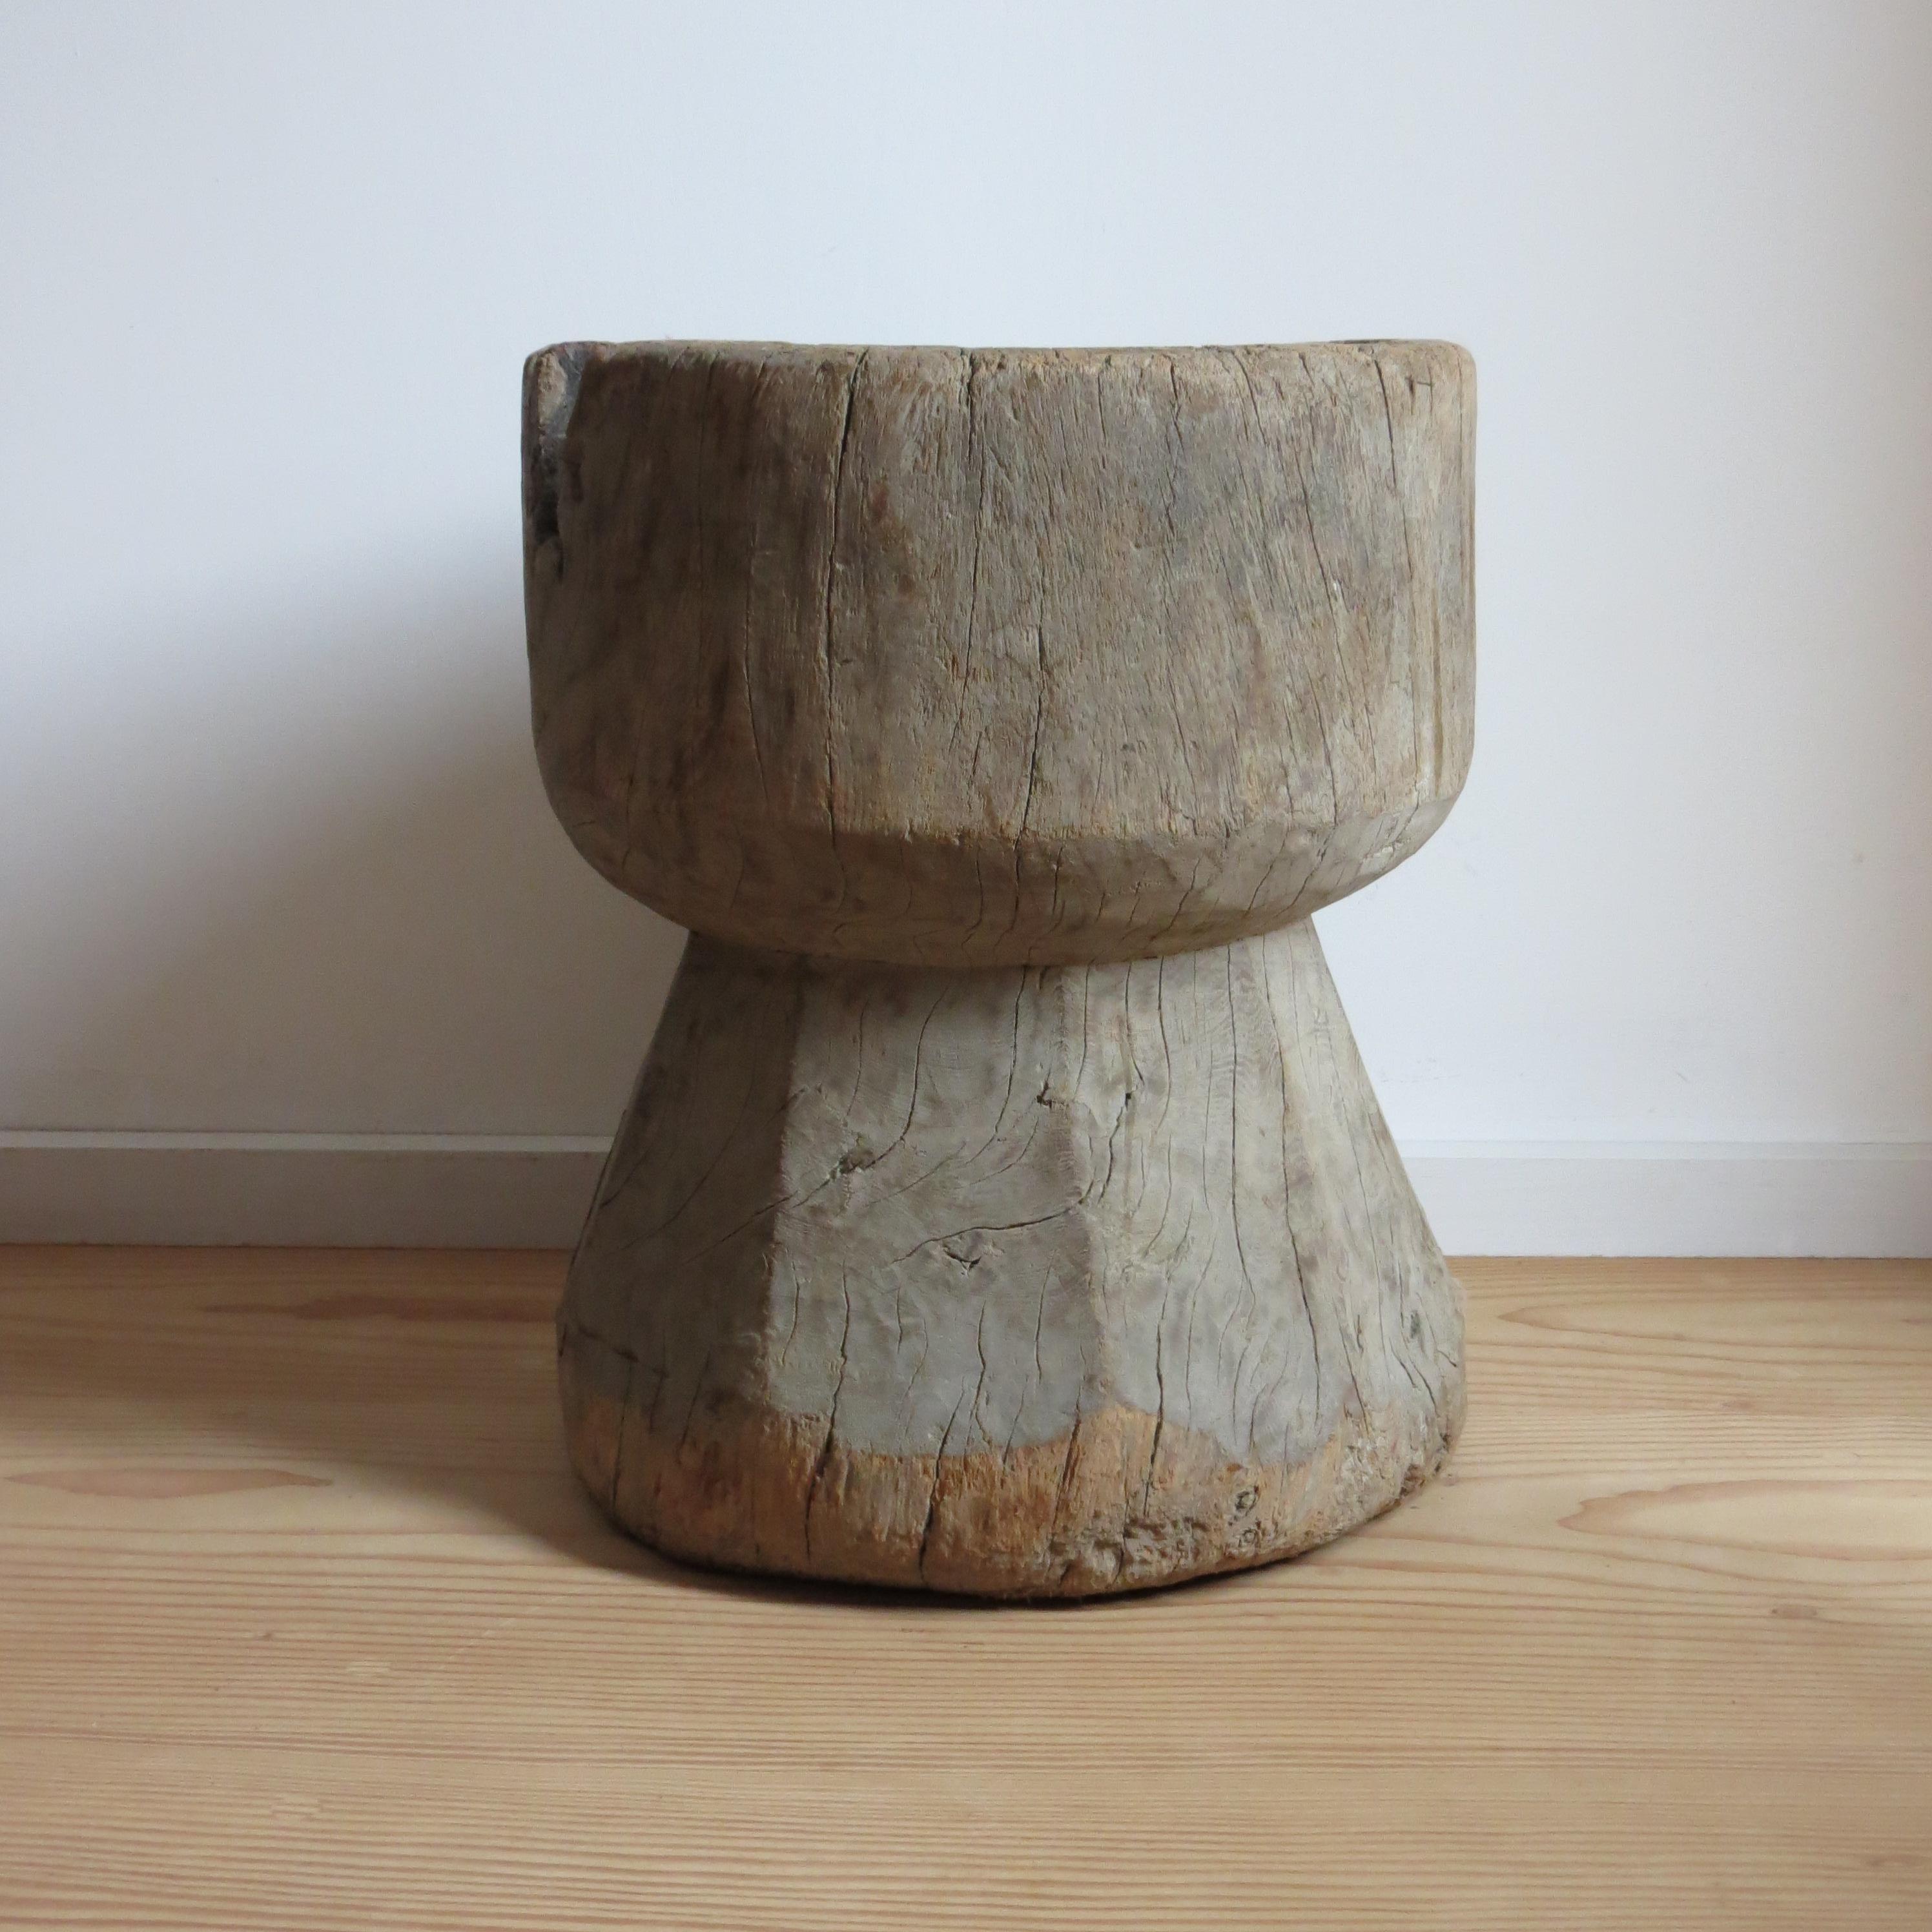 Un magnifique tabouret ou table à mortier en bois rustique et primitif. 
Fabriquée en bois dur, cette pièce a été réalisée à la main.
Cette pièce est très variée et peut être utilisée comme une petite table ou un tabouret, ou retournée et utilisée